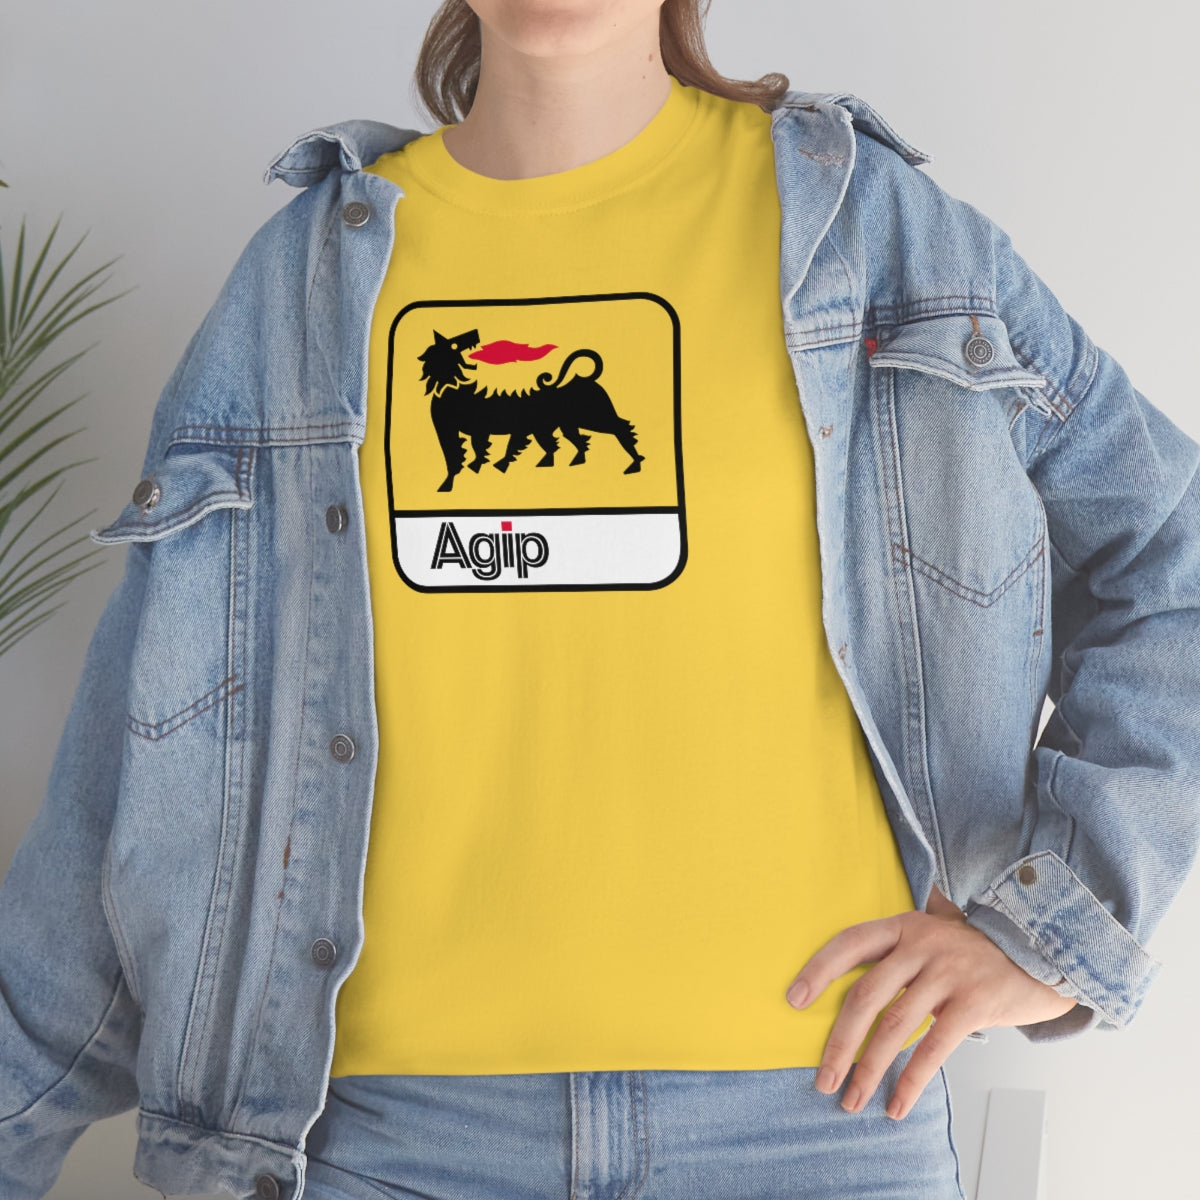 Agip T-Shirt